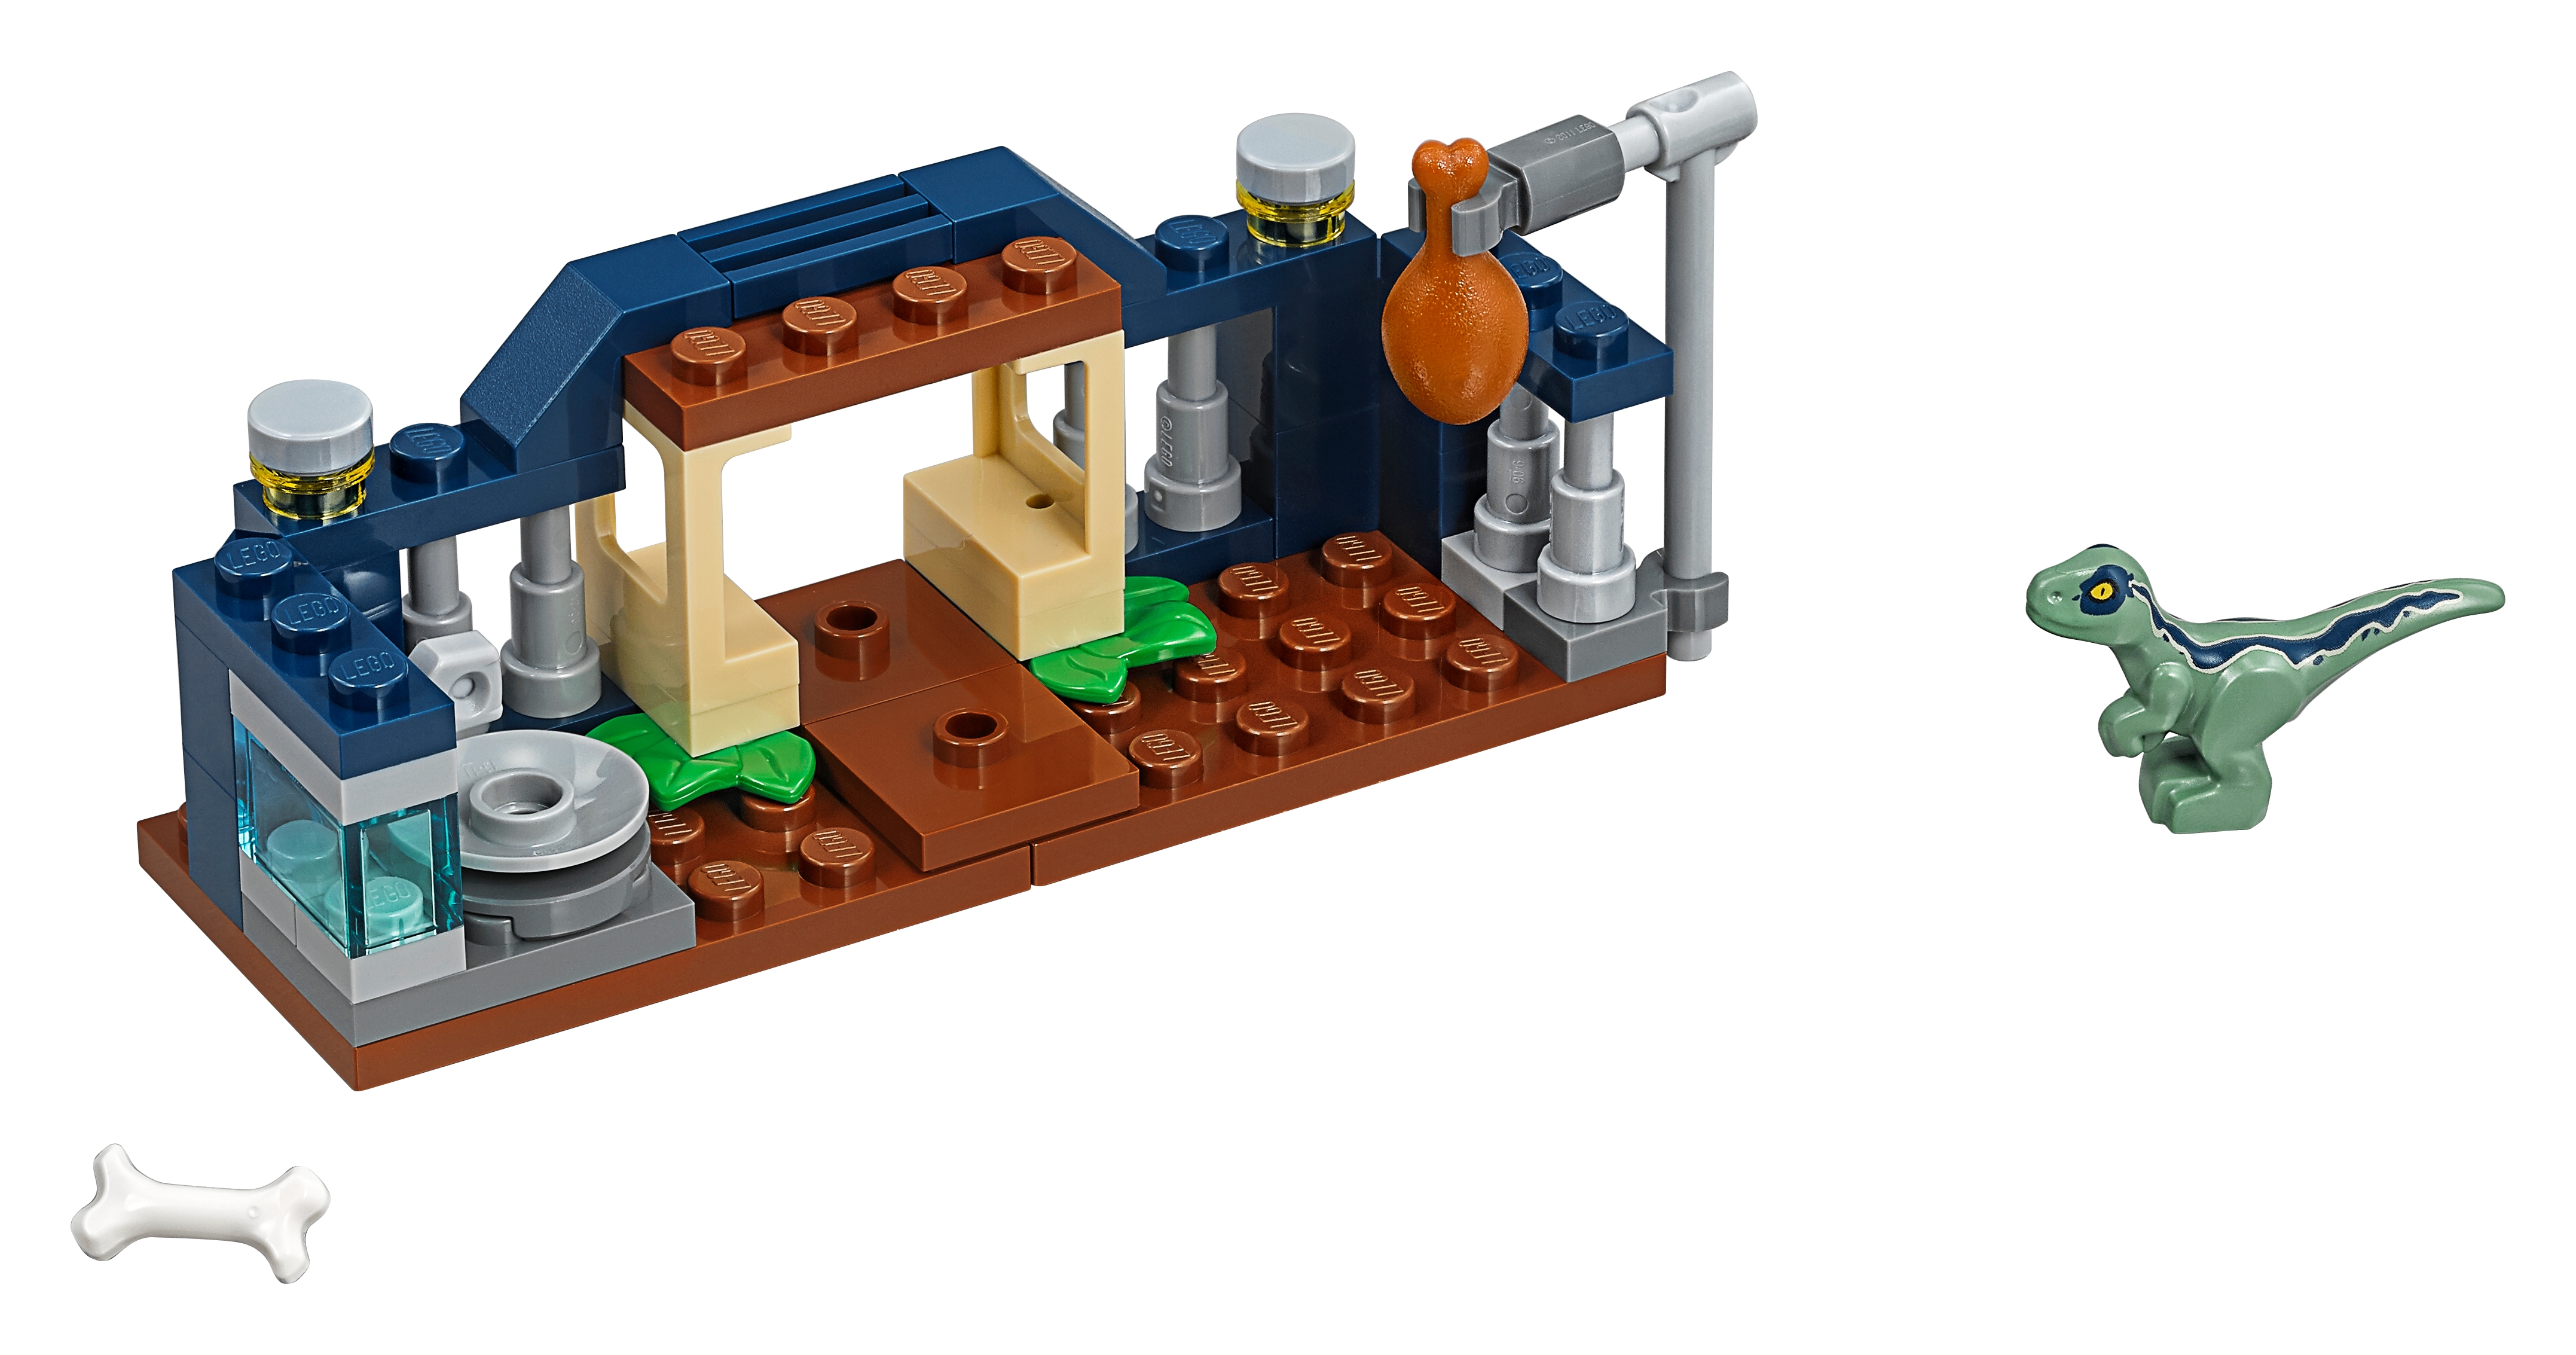 lego navy boat